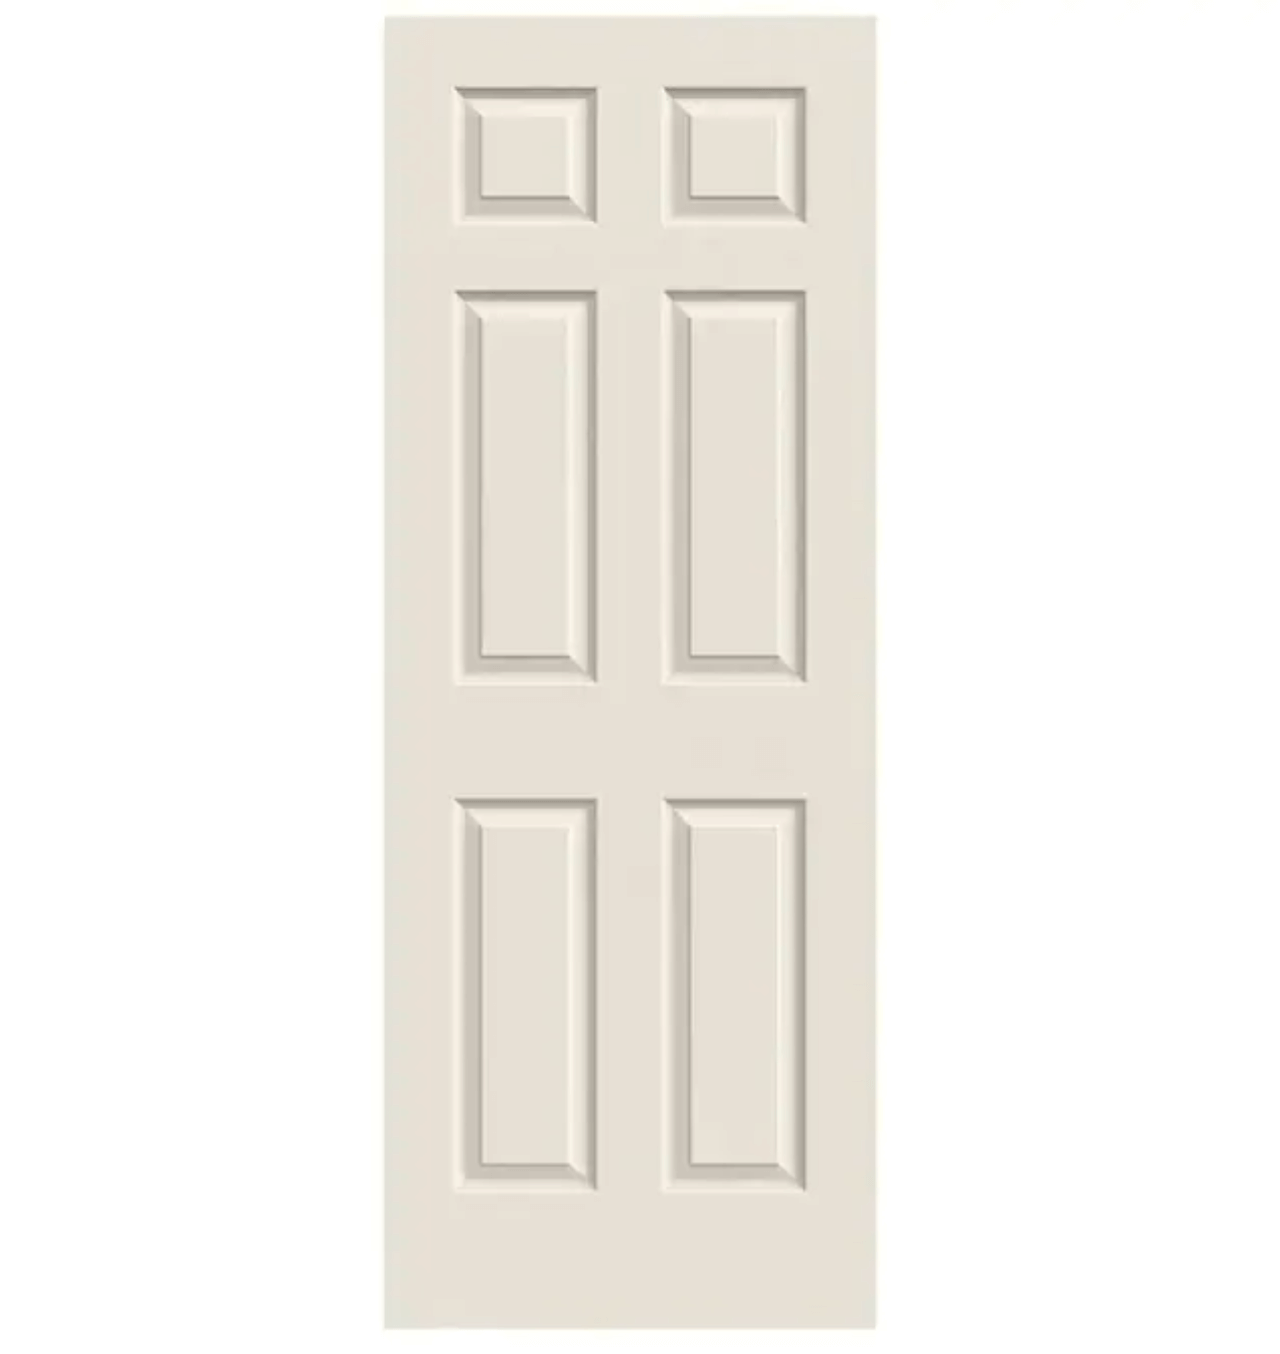 Colonist 32" x 80" Primed 6-Panel Textured Hollow Core Slab Door